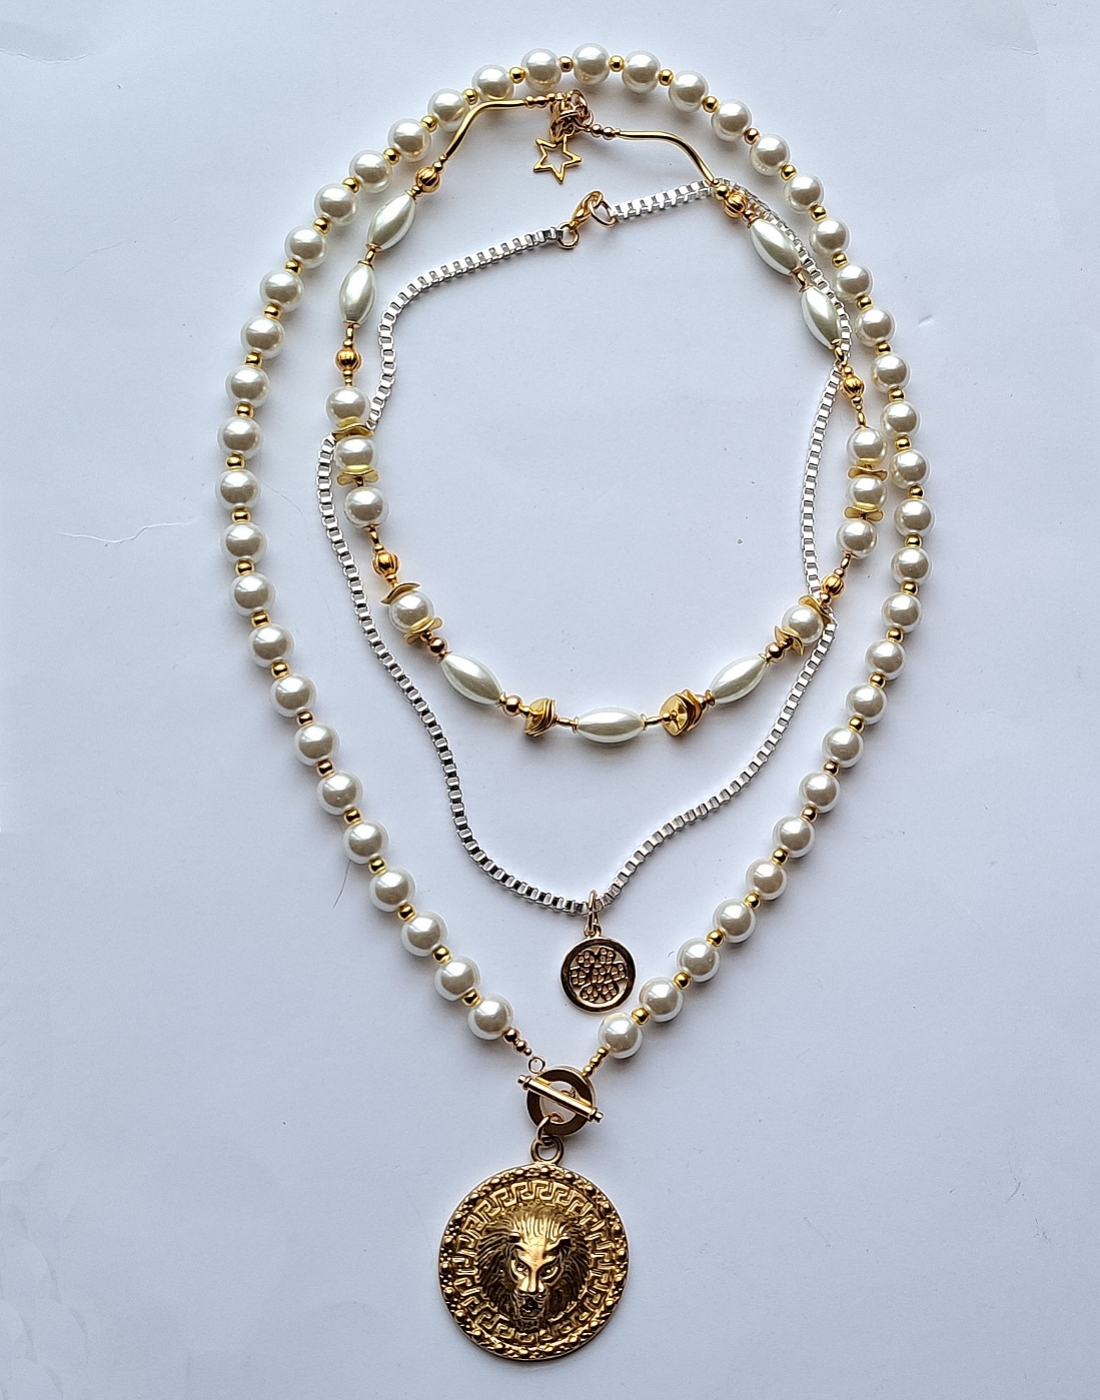 kompozycja 3 oddzielnych naszyjników w duchu biżuterii Boho z mixu szklanych pereł i ozdób typu bali w kolorze złota